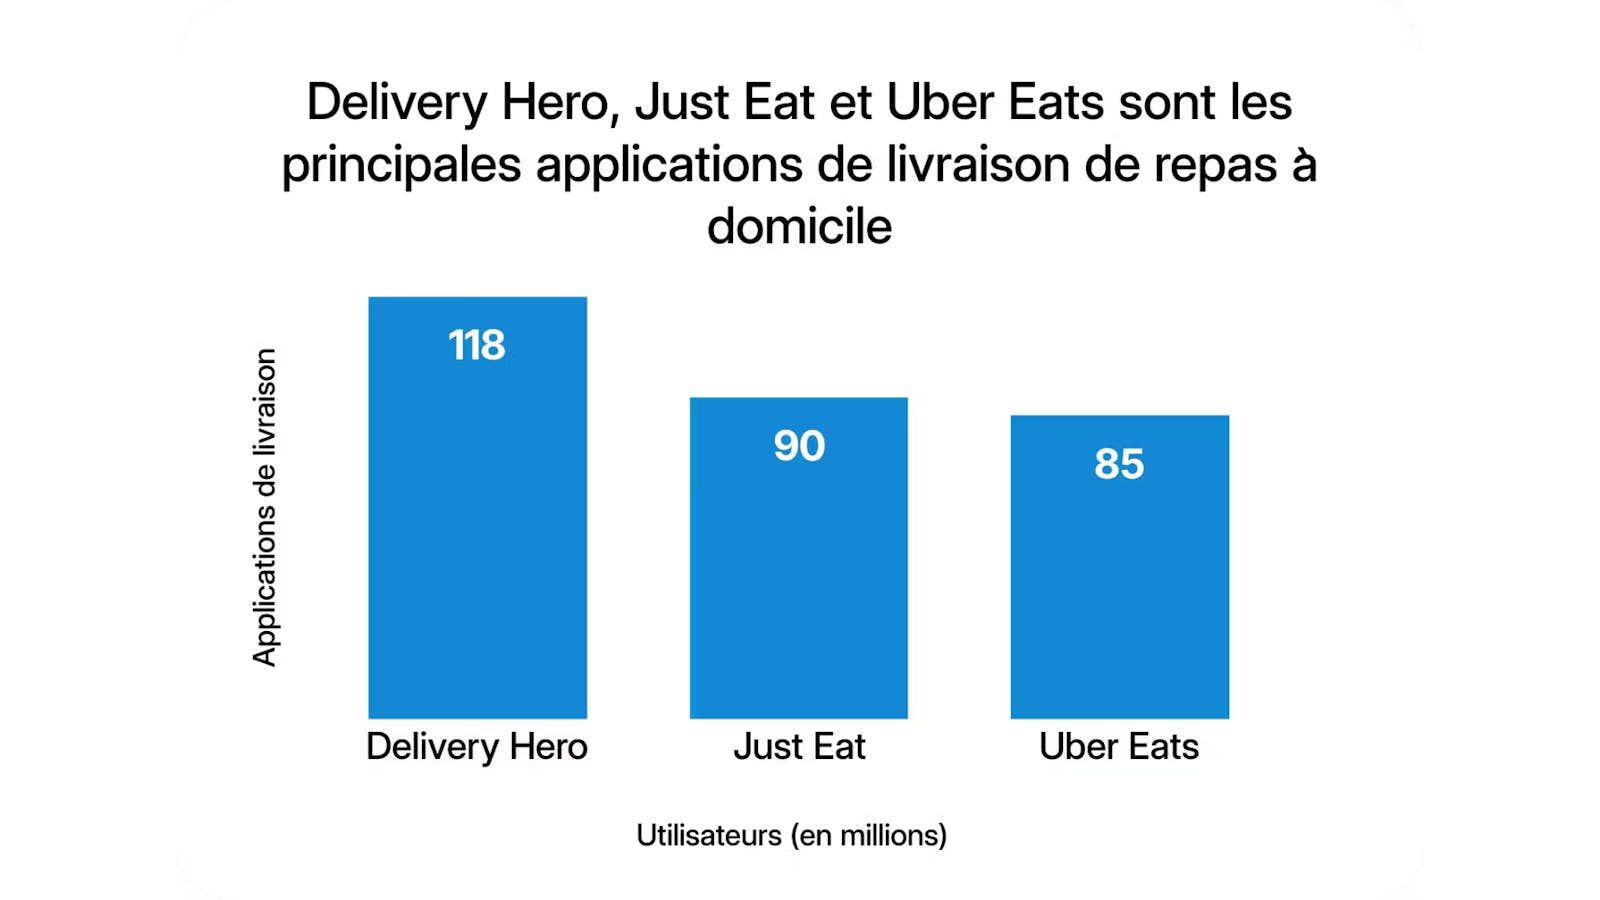 Uber Eats, l'application de livraison de repas à domicile, arrive